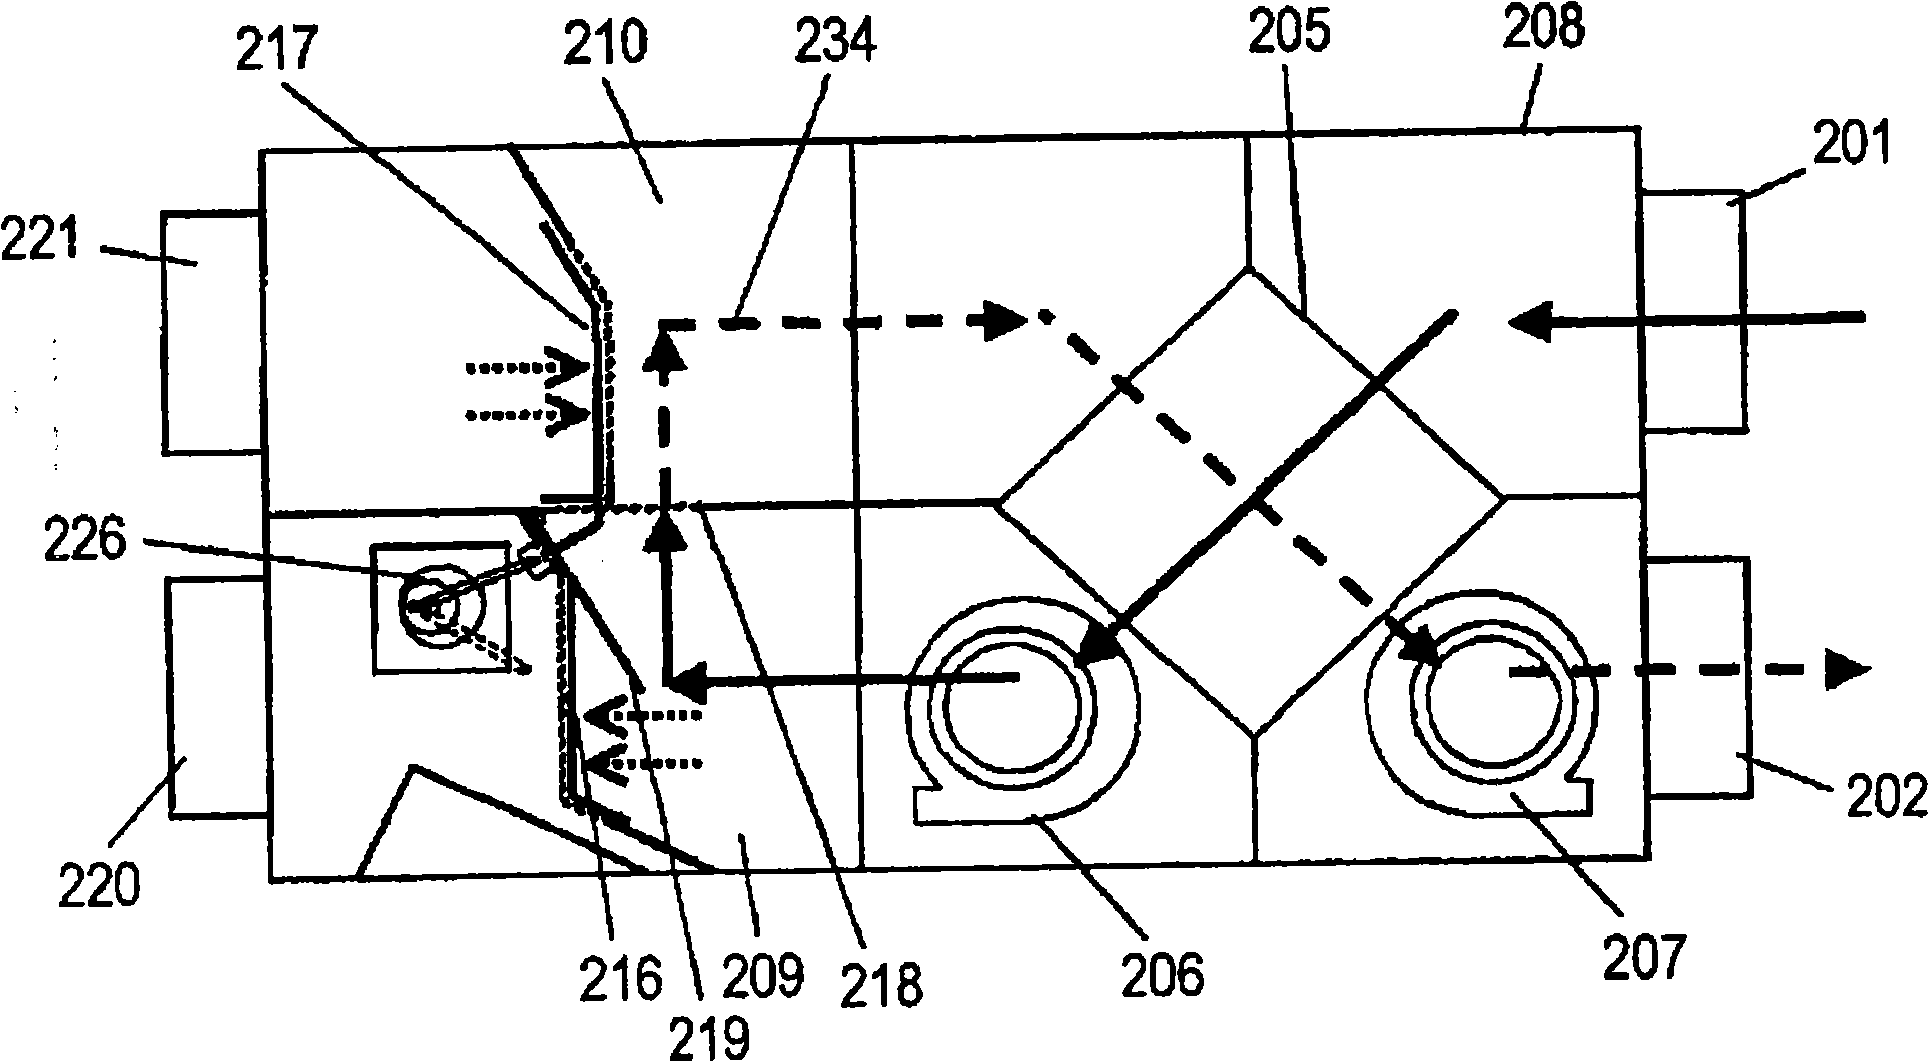 Heat exchange type ventilator